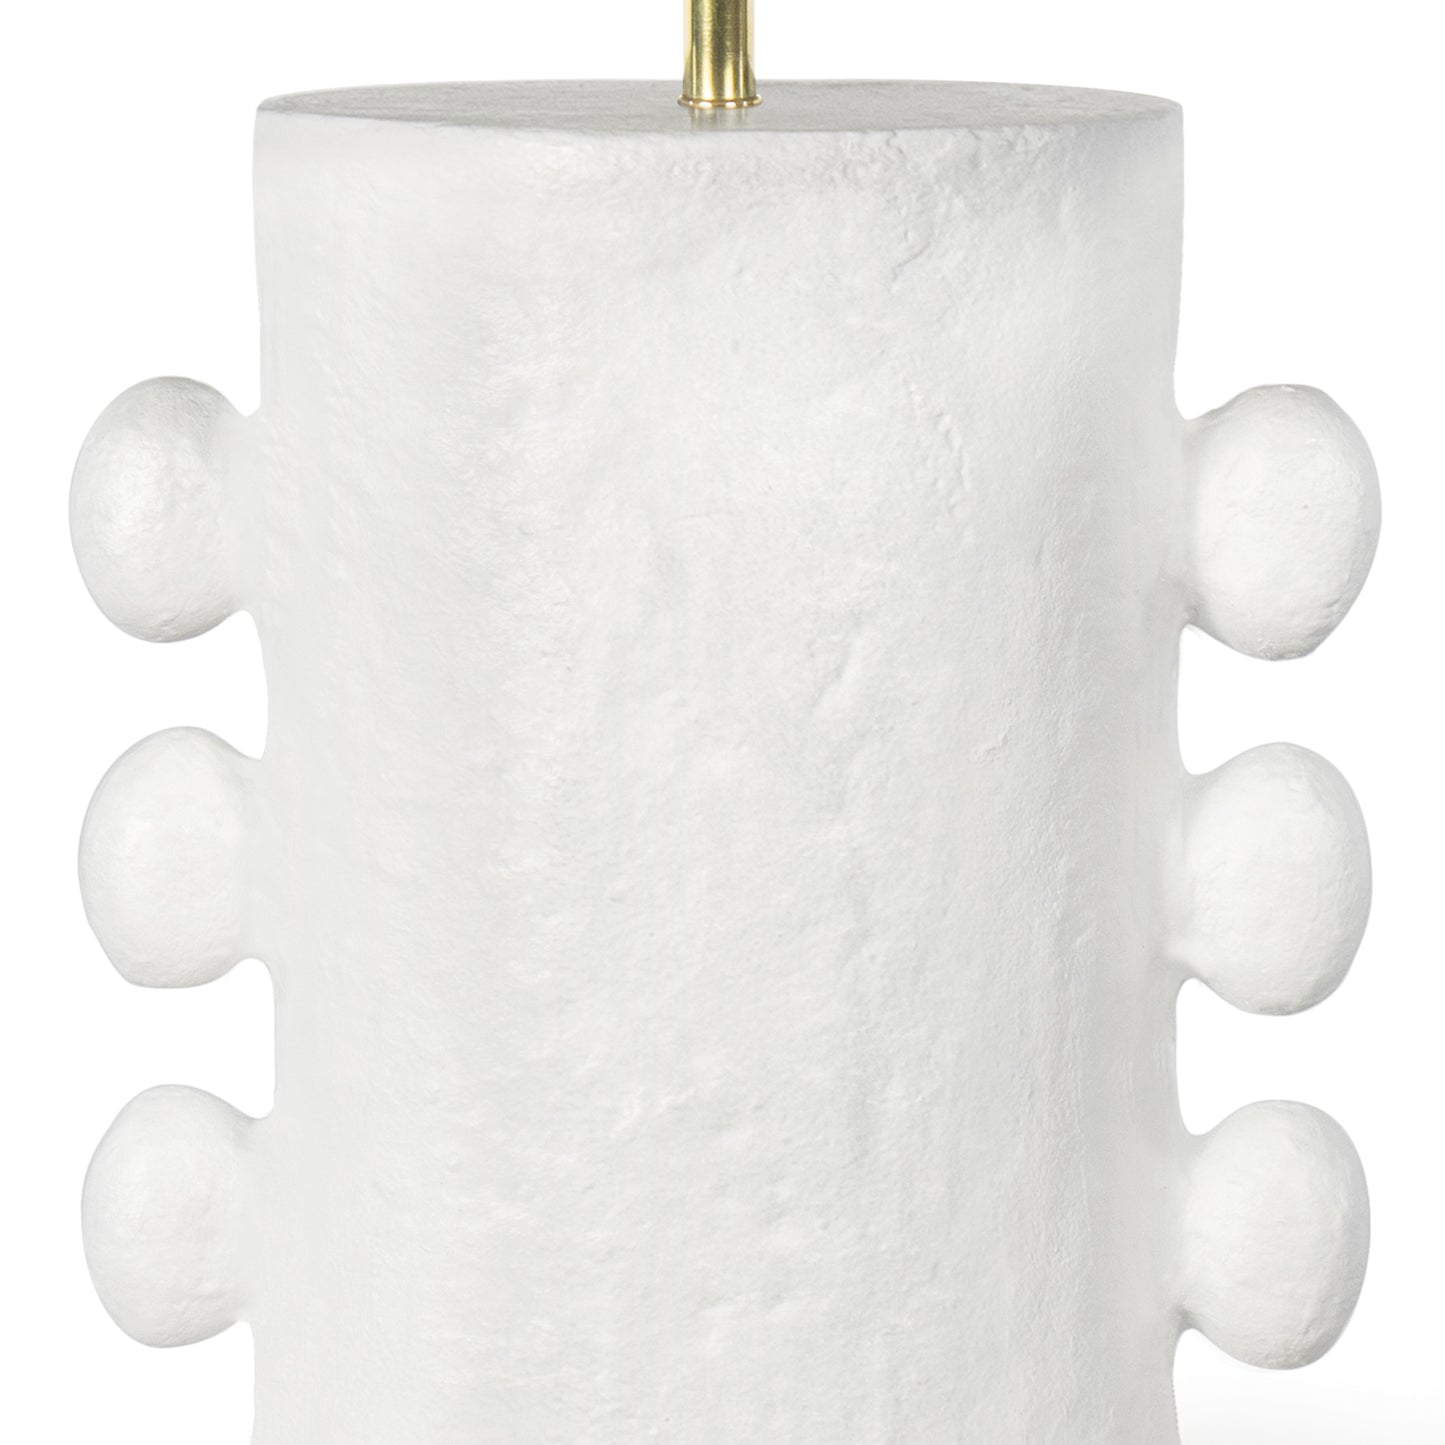 Regina Andrew Maya Metal Table Lamp in White